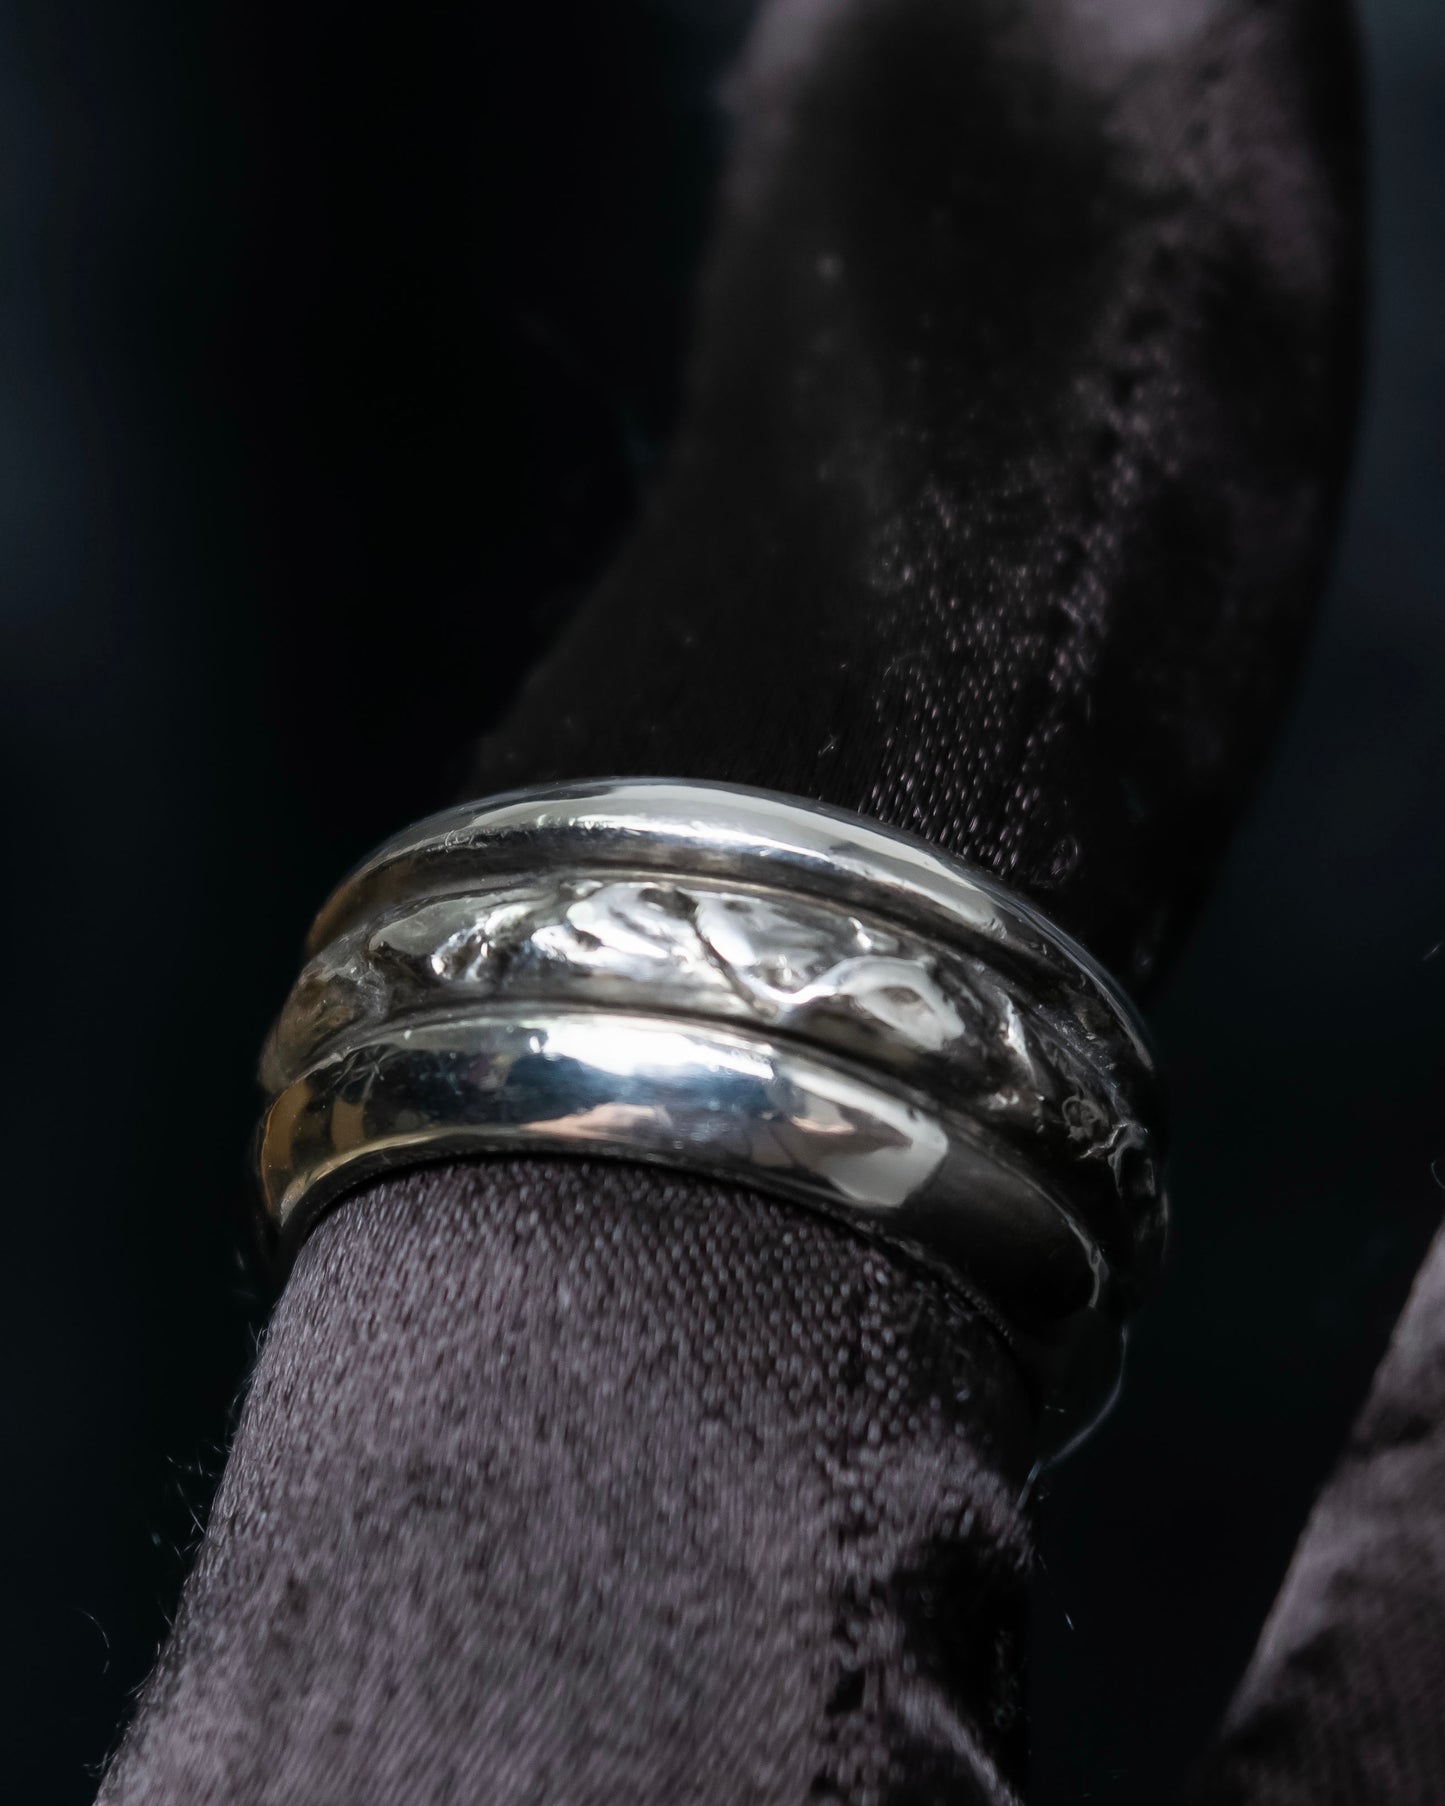 “Georg Jensen” 3 Layered circle silver ring